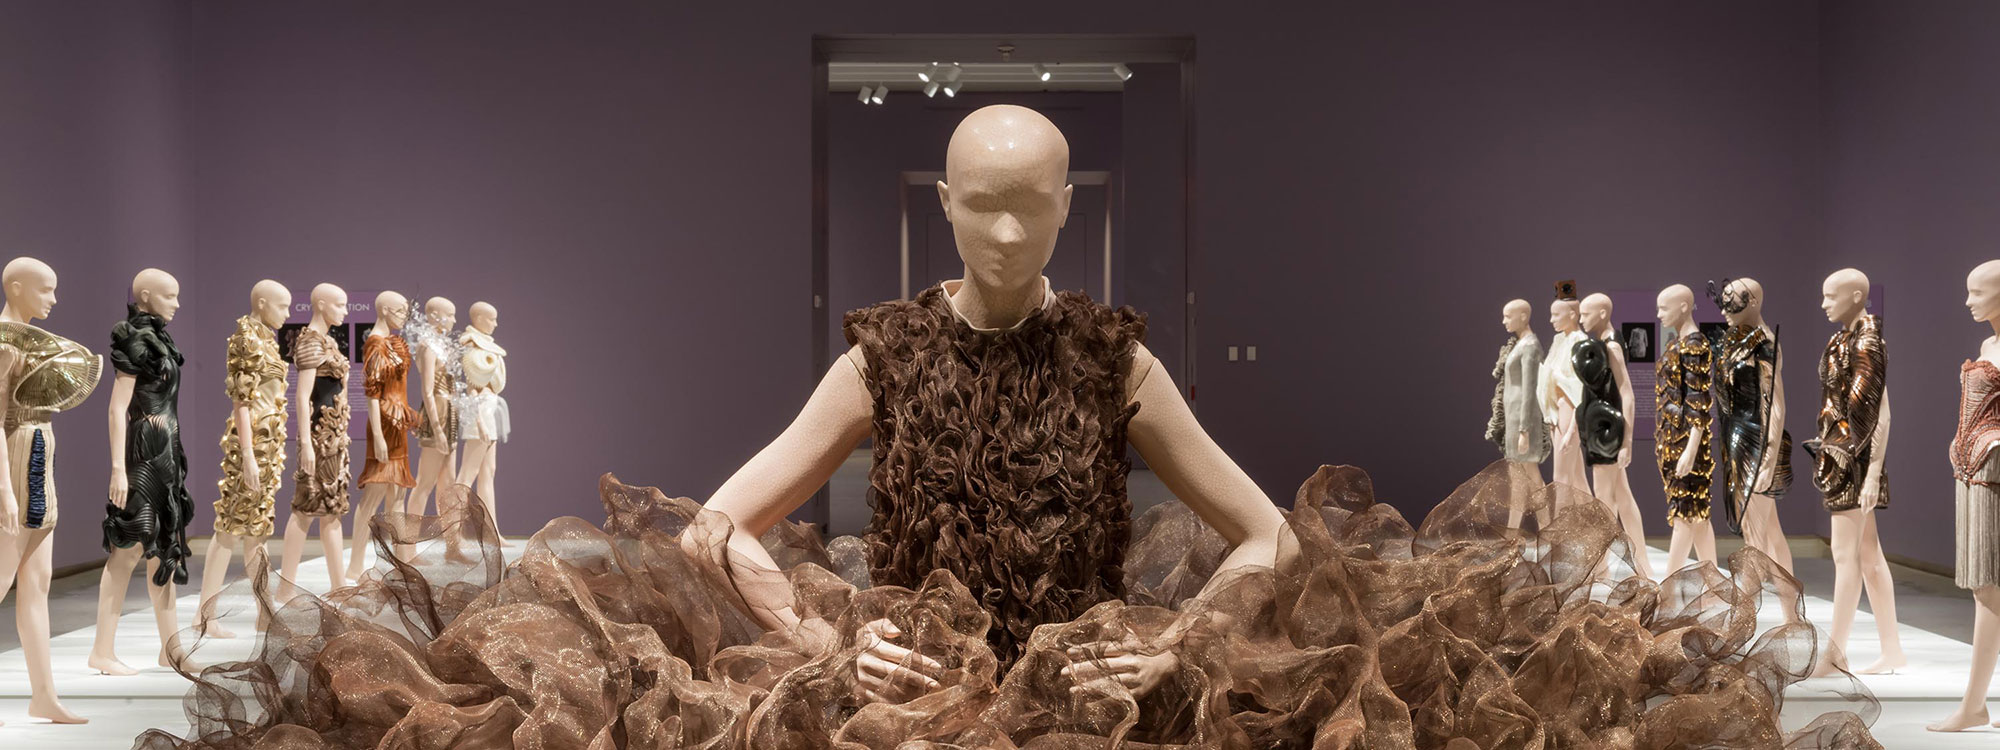 An installation view of Iris van Herpen's exhibition